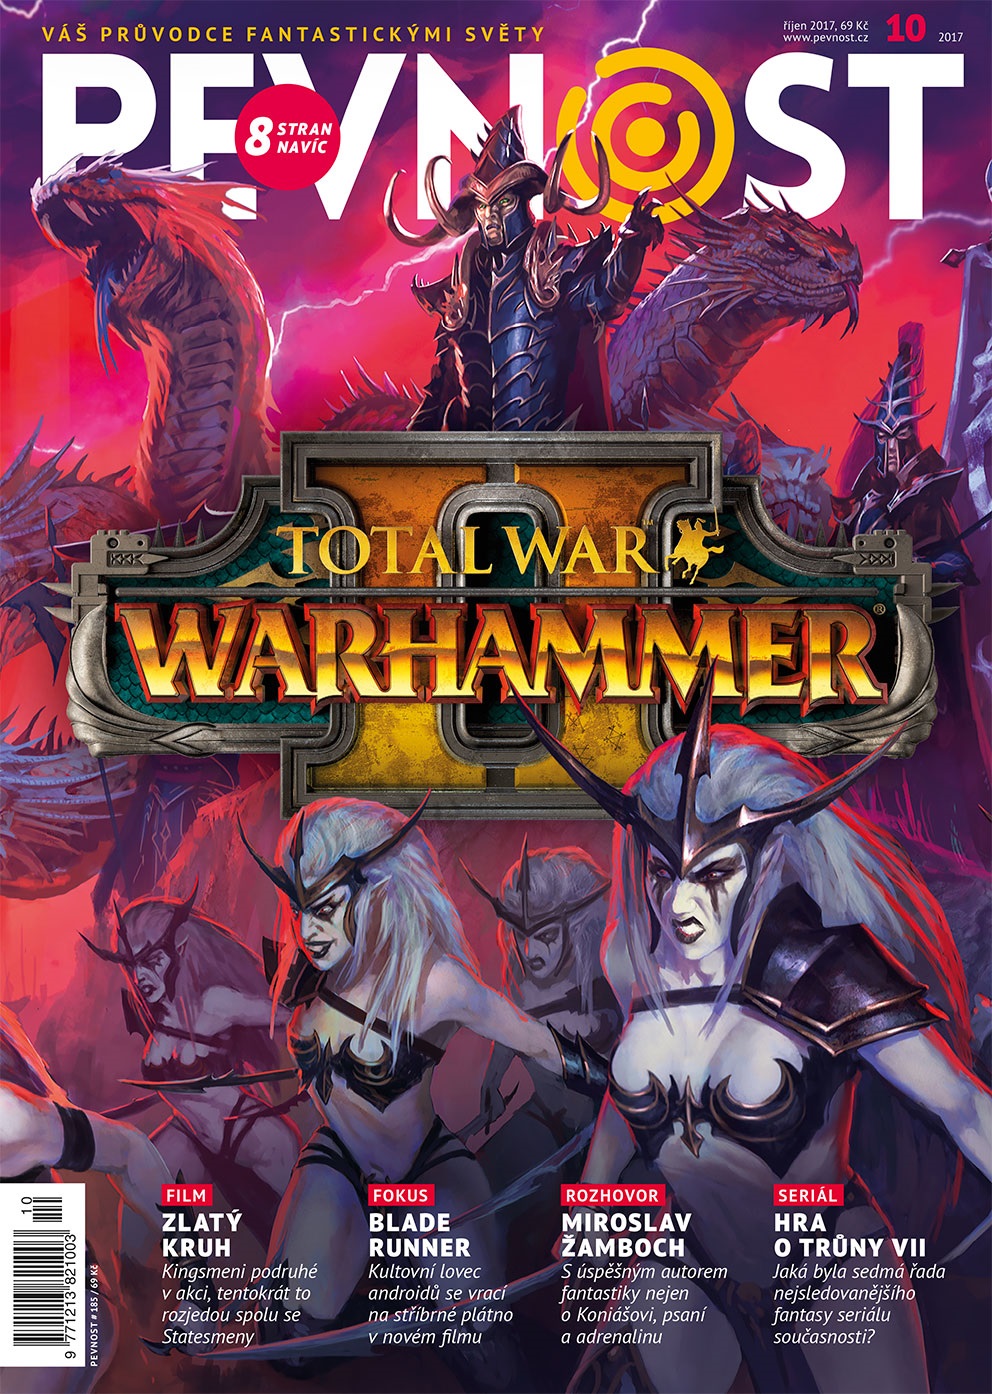 Díky Polarisu u nás známe Warhammer už dvacet let a hry, knihy, figurky a filmy stále přibývají. 